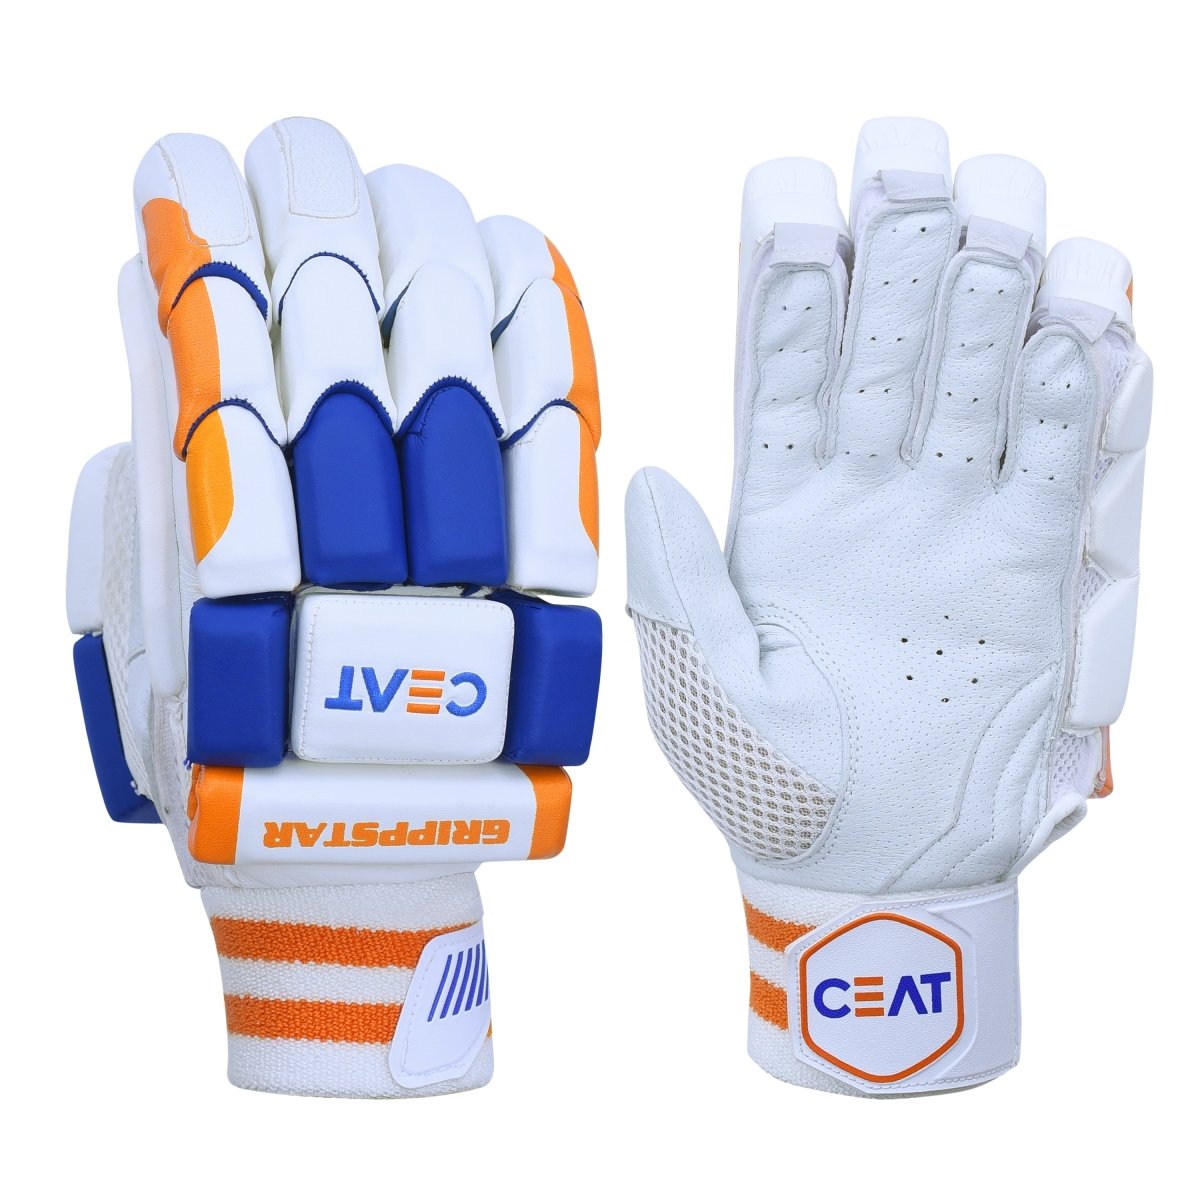 CEAT Gripp Star Cricket Batting Gloves.